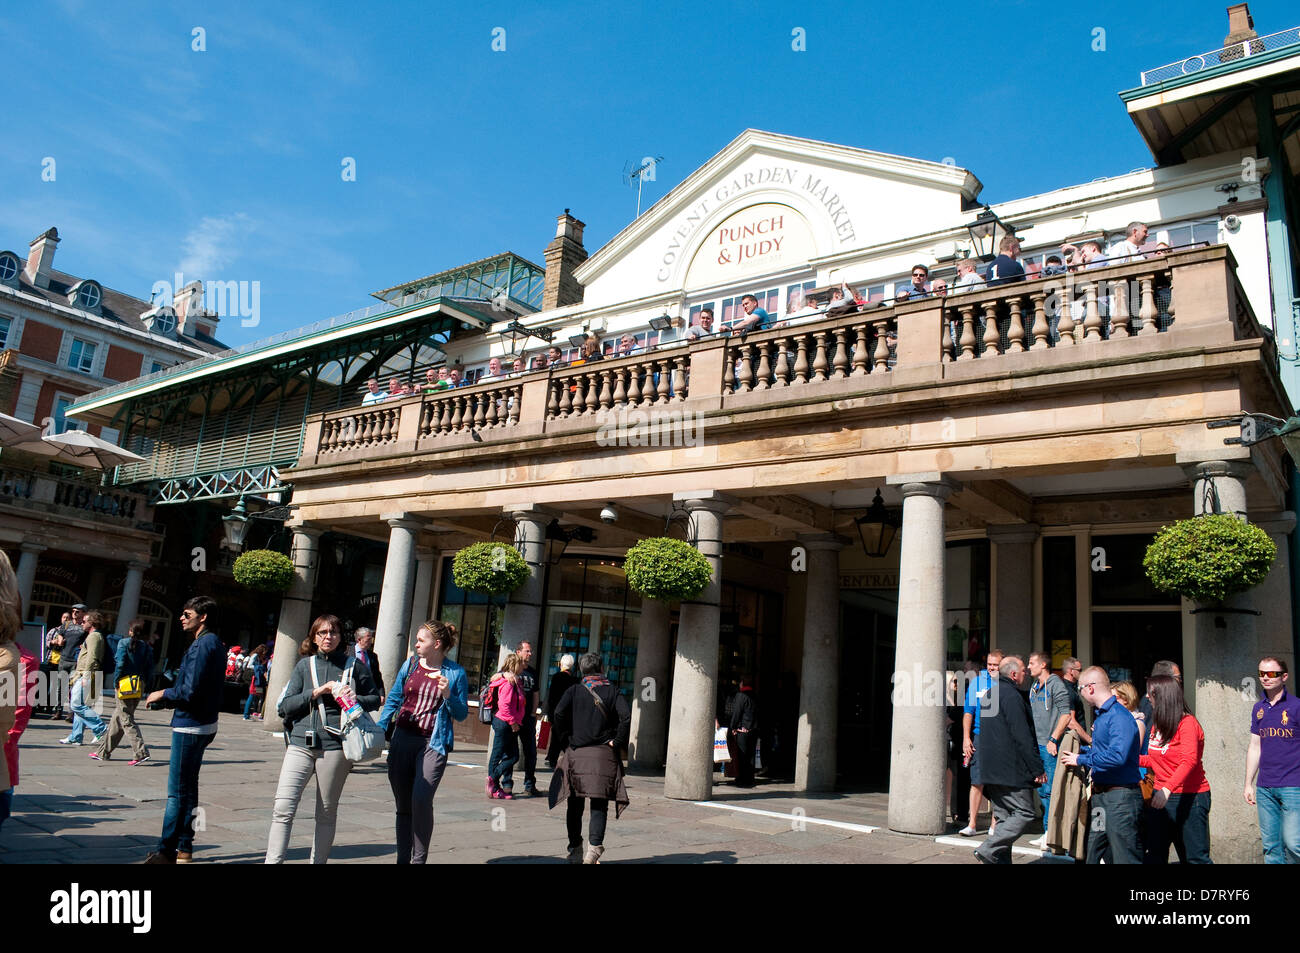 Mercato di Covent Garden, Punch & Judy, London, Regno Unito Foto Stock